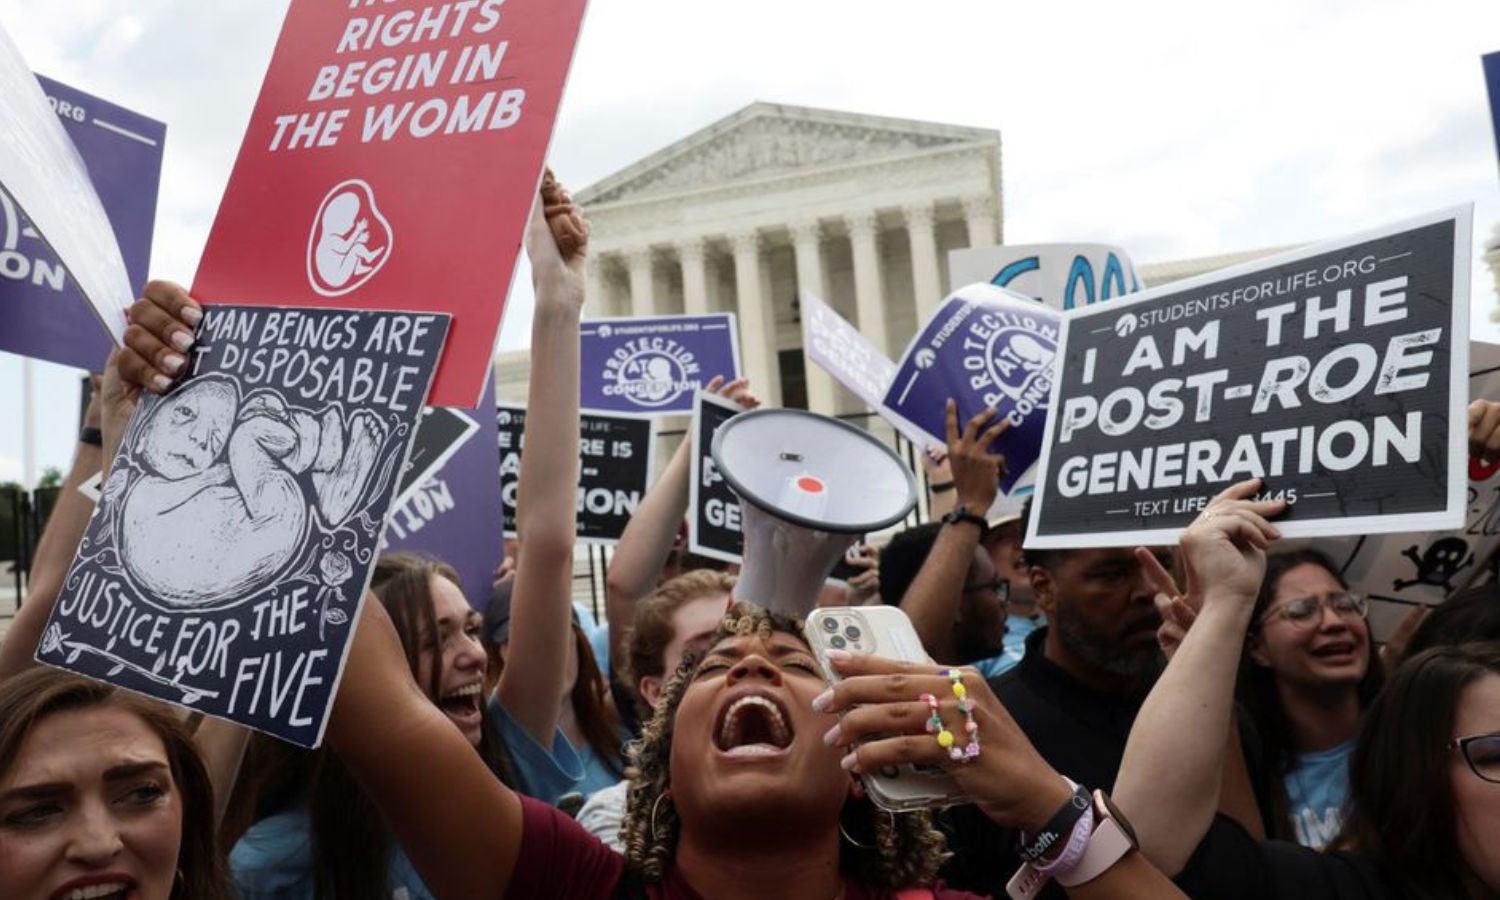 تقييد إجهاض الناجيات من الاغتصاب يؤدي لـ”عواقب مدمِّرة” بأمريكا